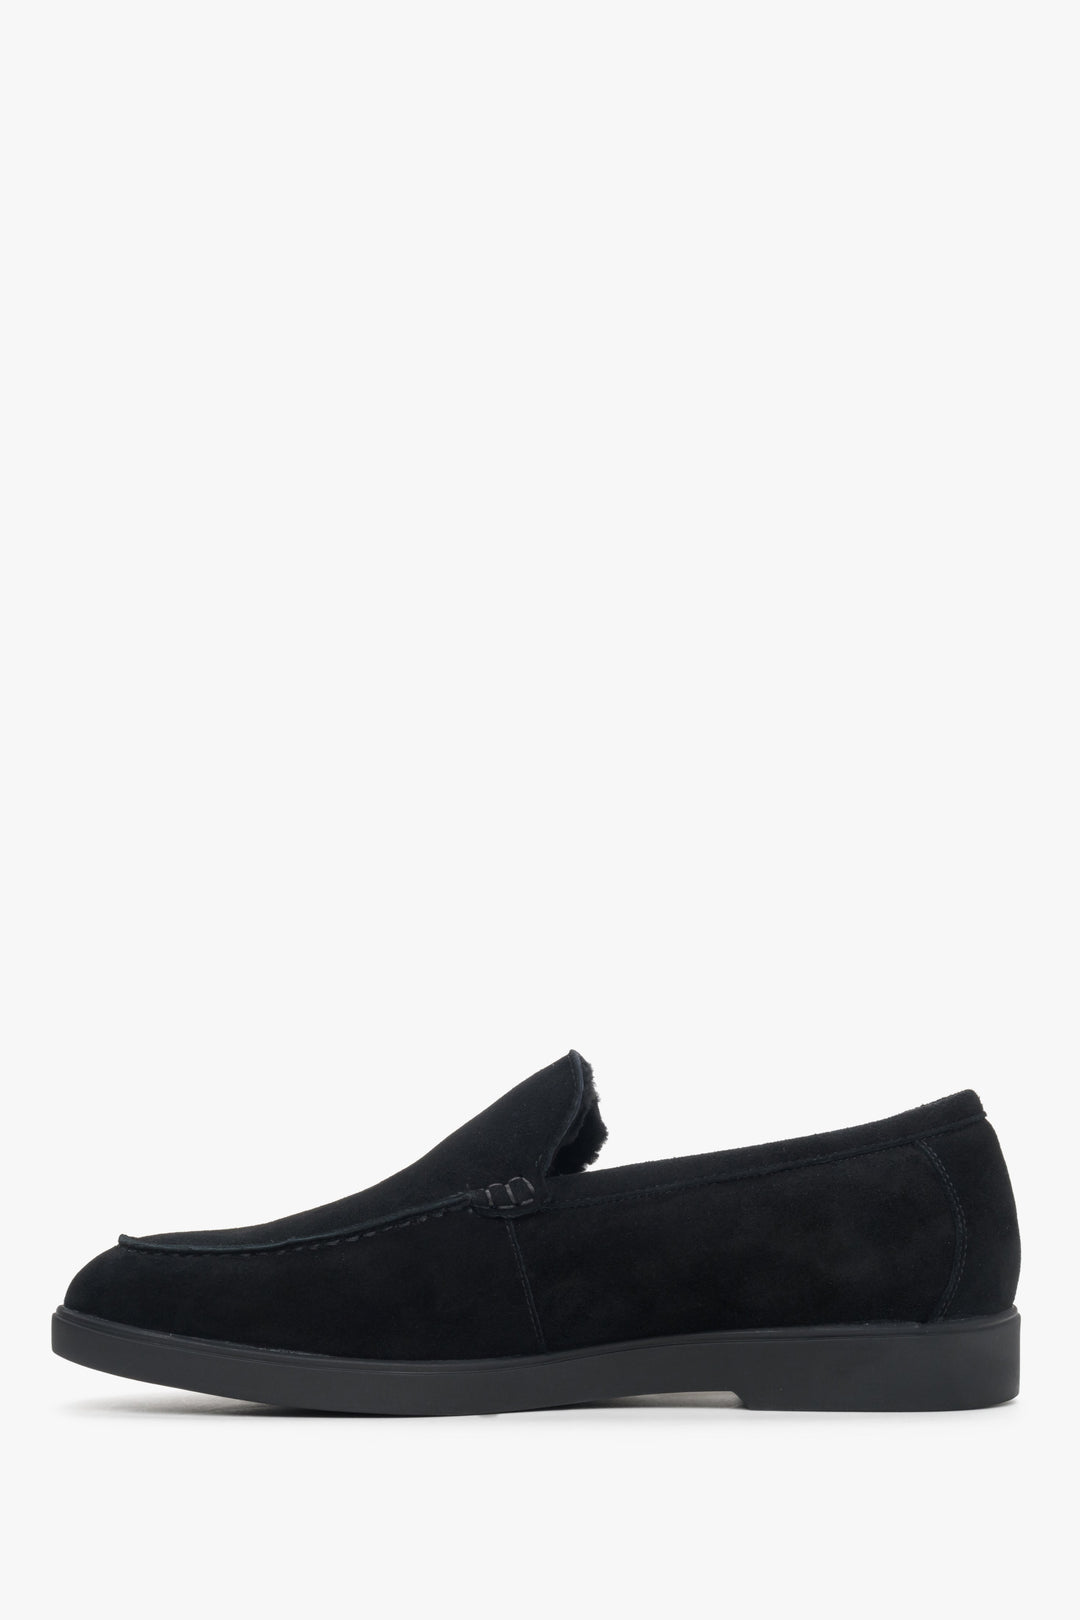 Velour men's black moccasins by Estro - shoe profile.